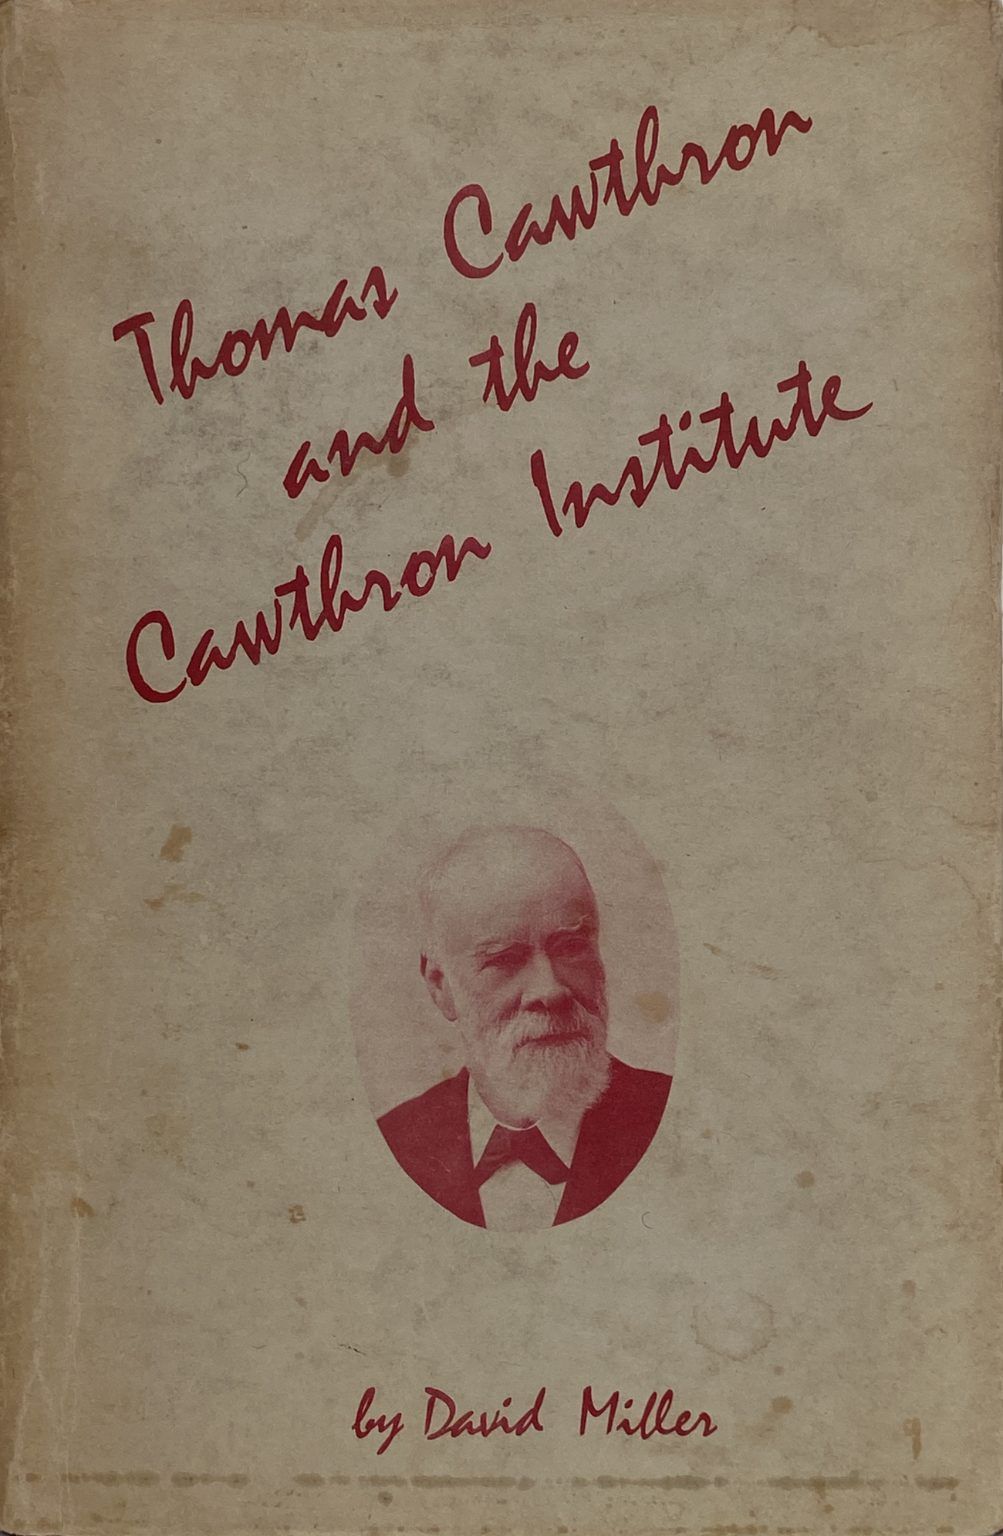 THOMAS CAWTHRON and the Cawthron Institute